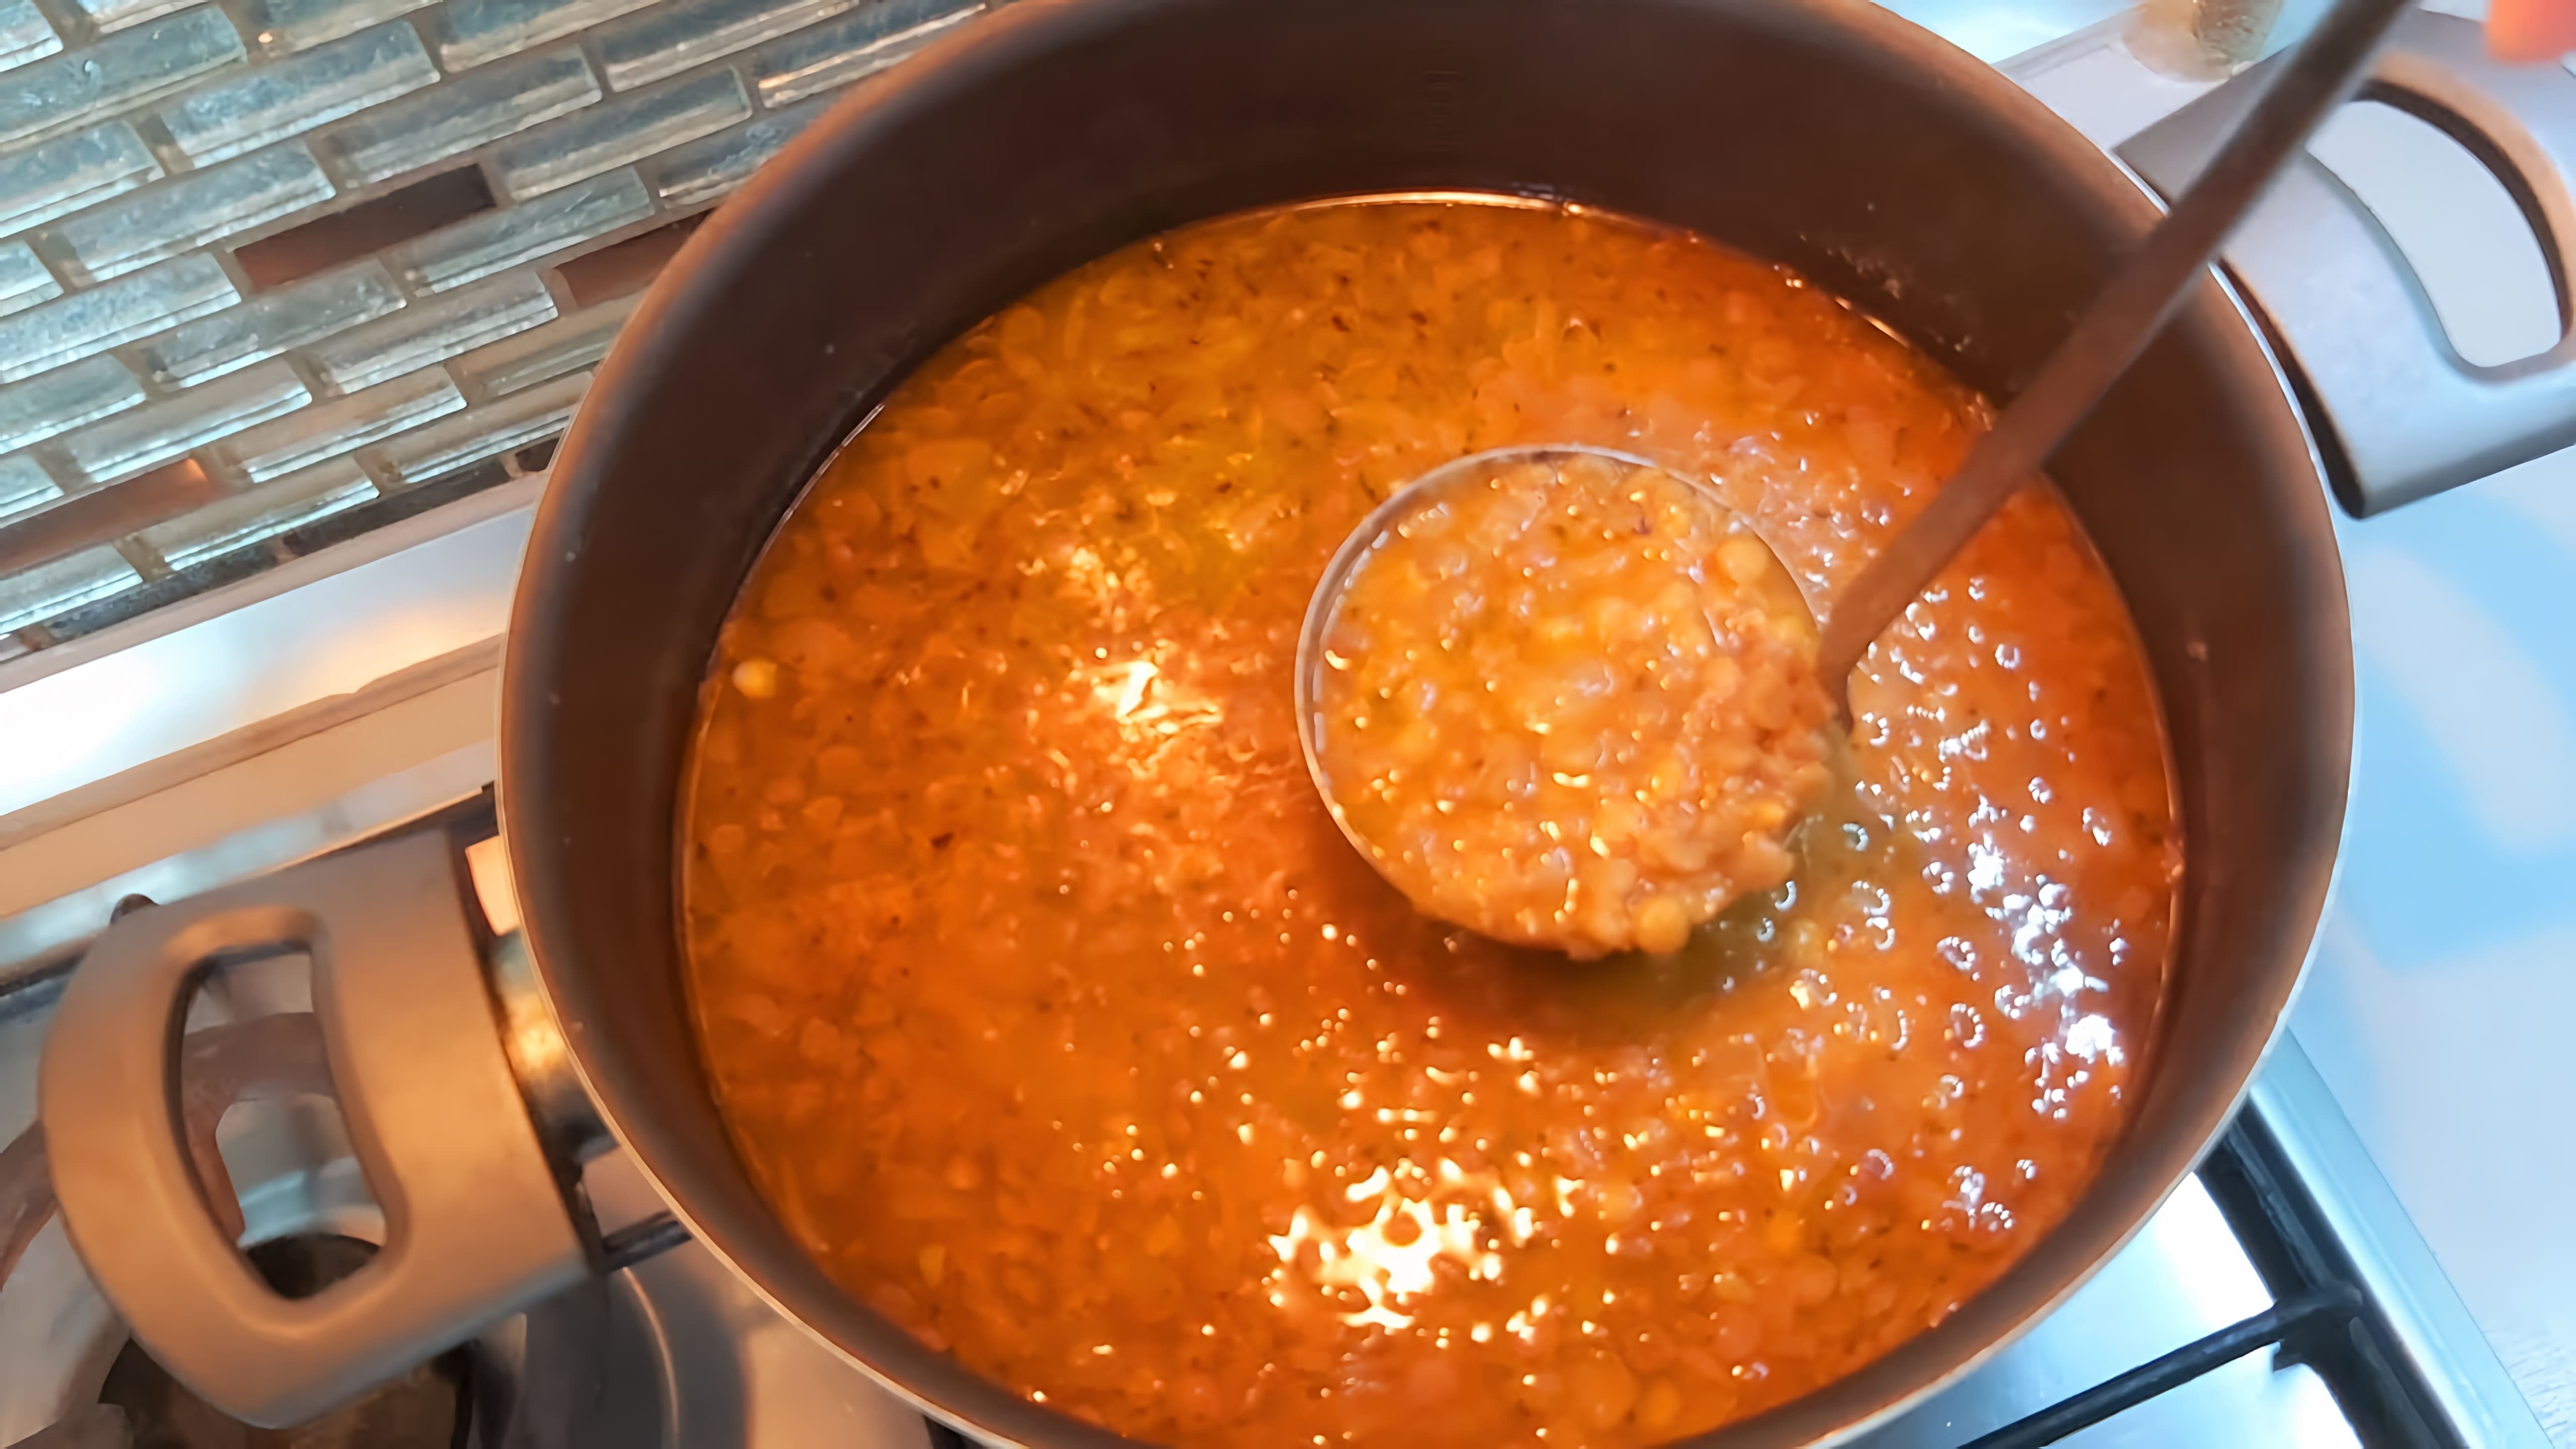 В этом видео демонстрируется рецепт приготовления чечевичного супа по-турецки